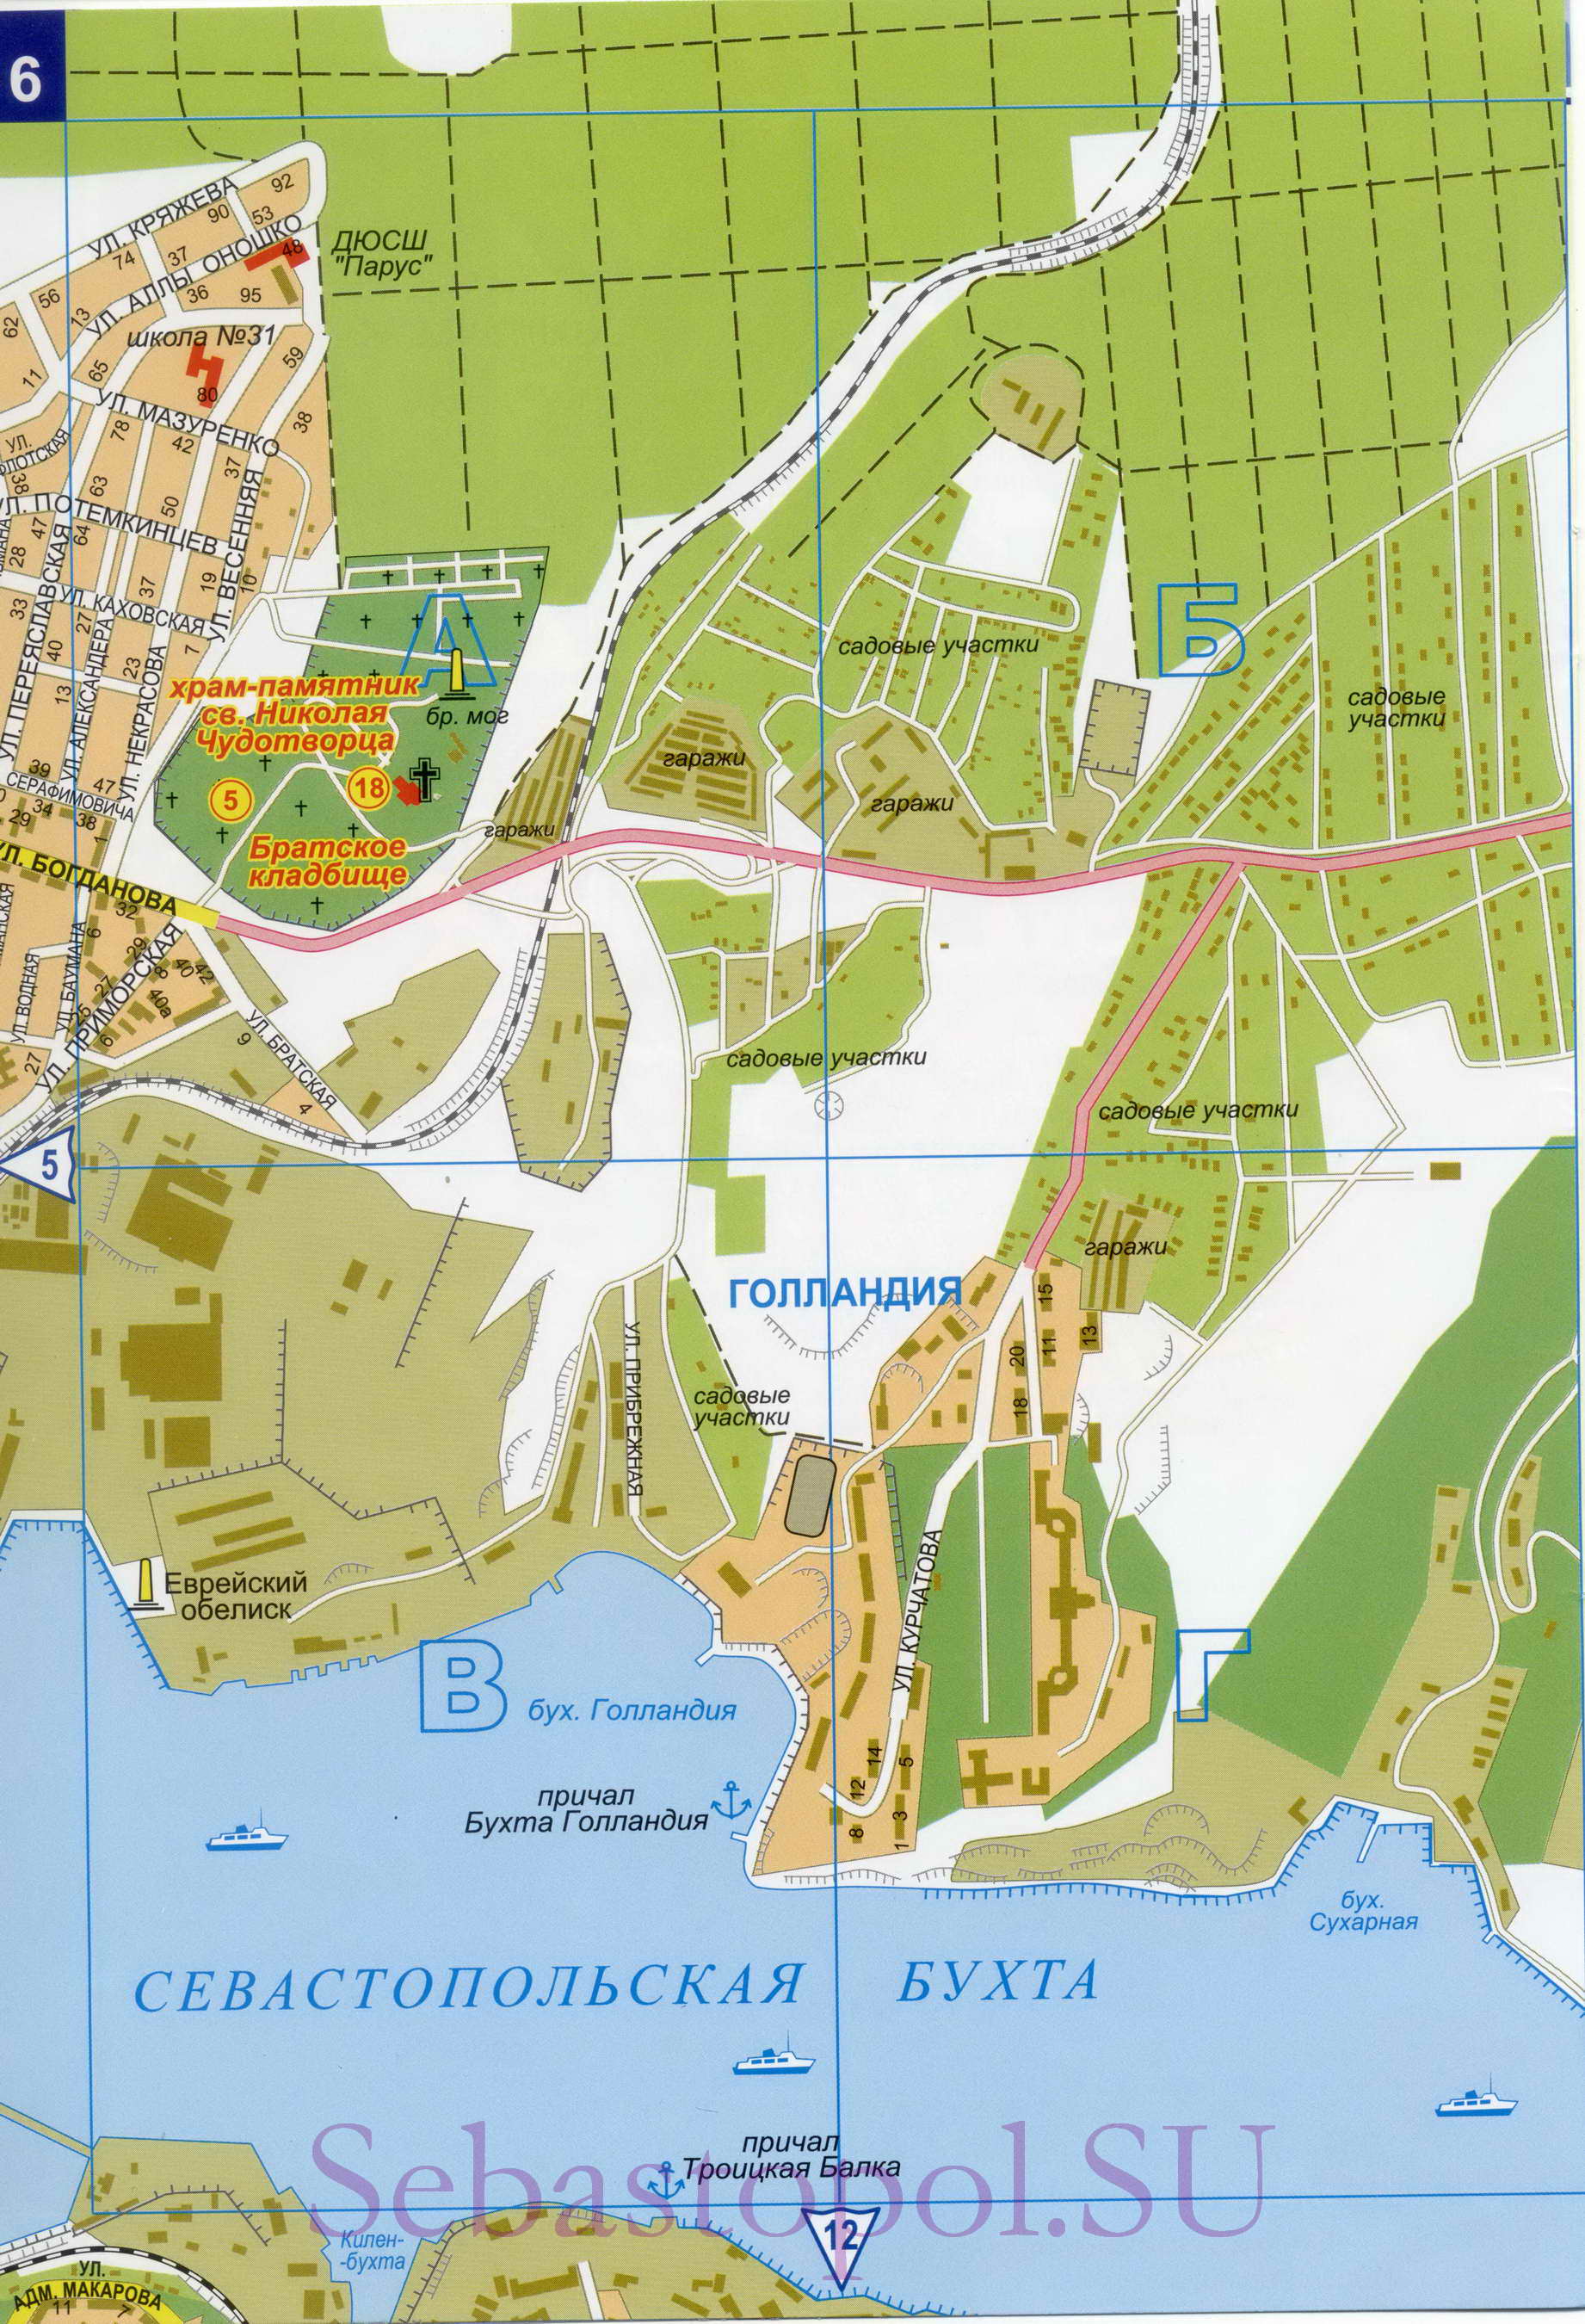 Карта Севастополя. Подробная карта Севастополя с номерами домов. Новая карта Севастополя 2011, E0 - 